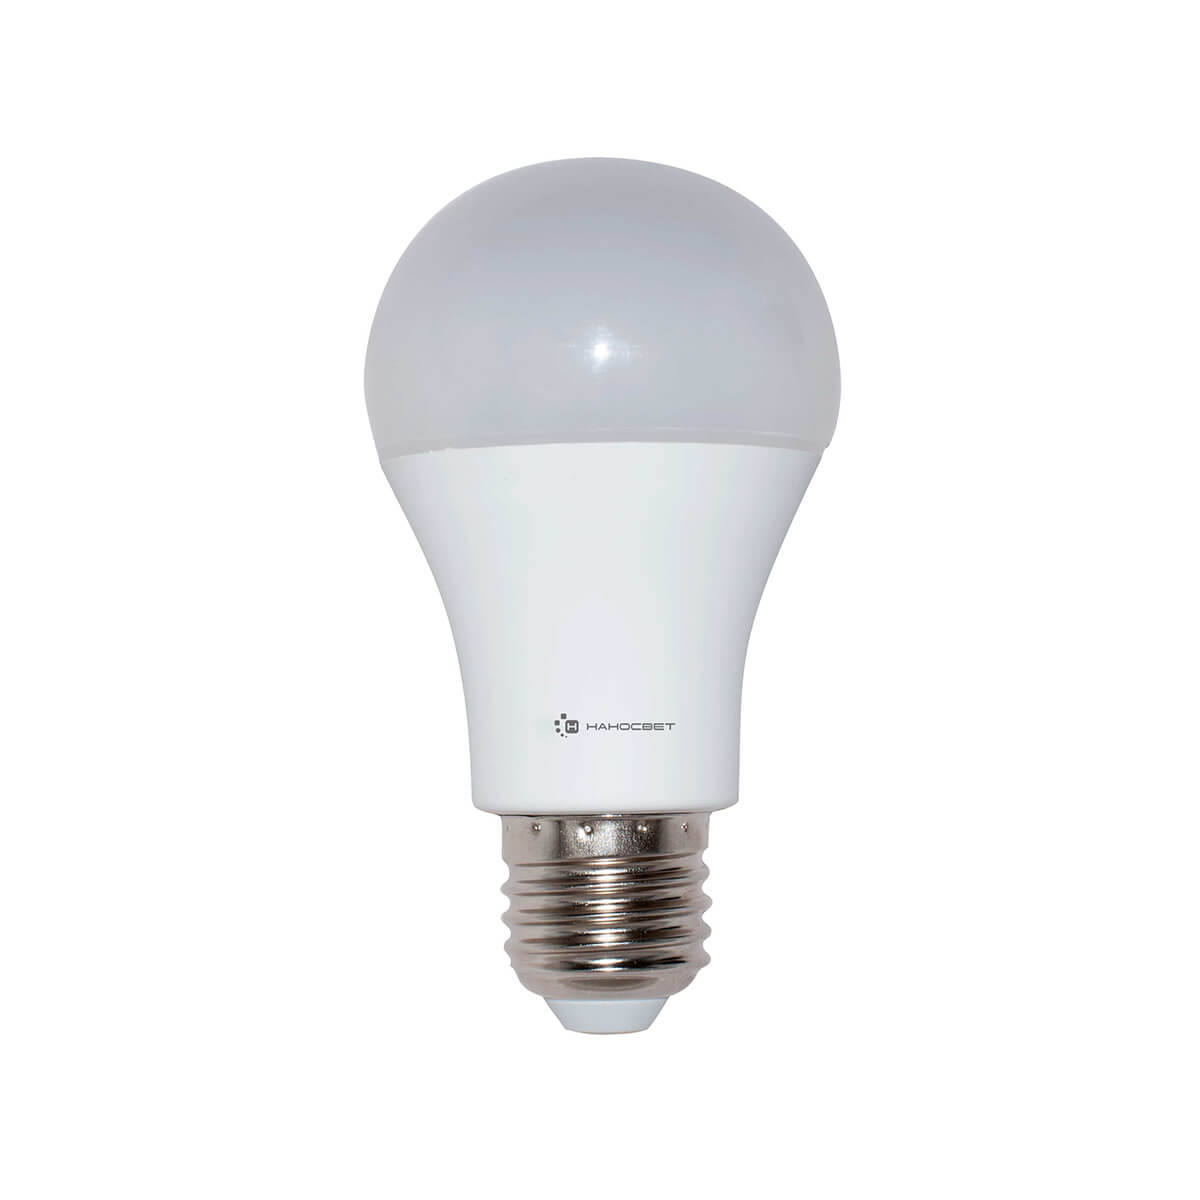 Светодиодная лампочка Наносвет LC-GLS-14/E27/840 L197 E27 14W